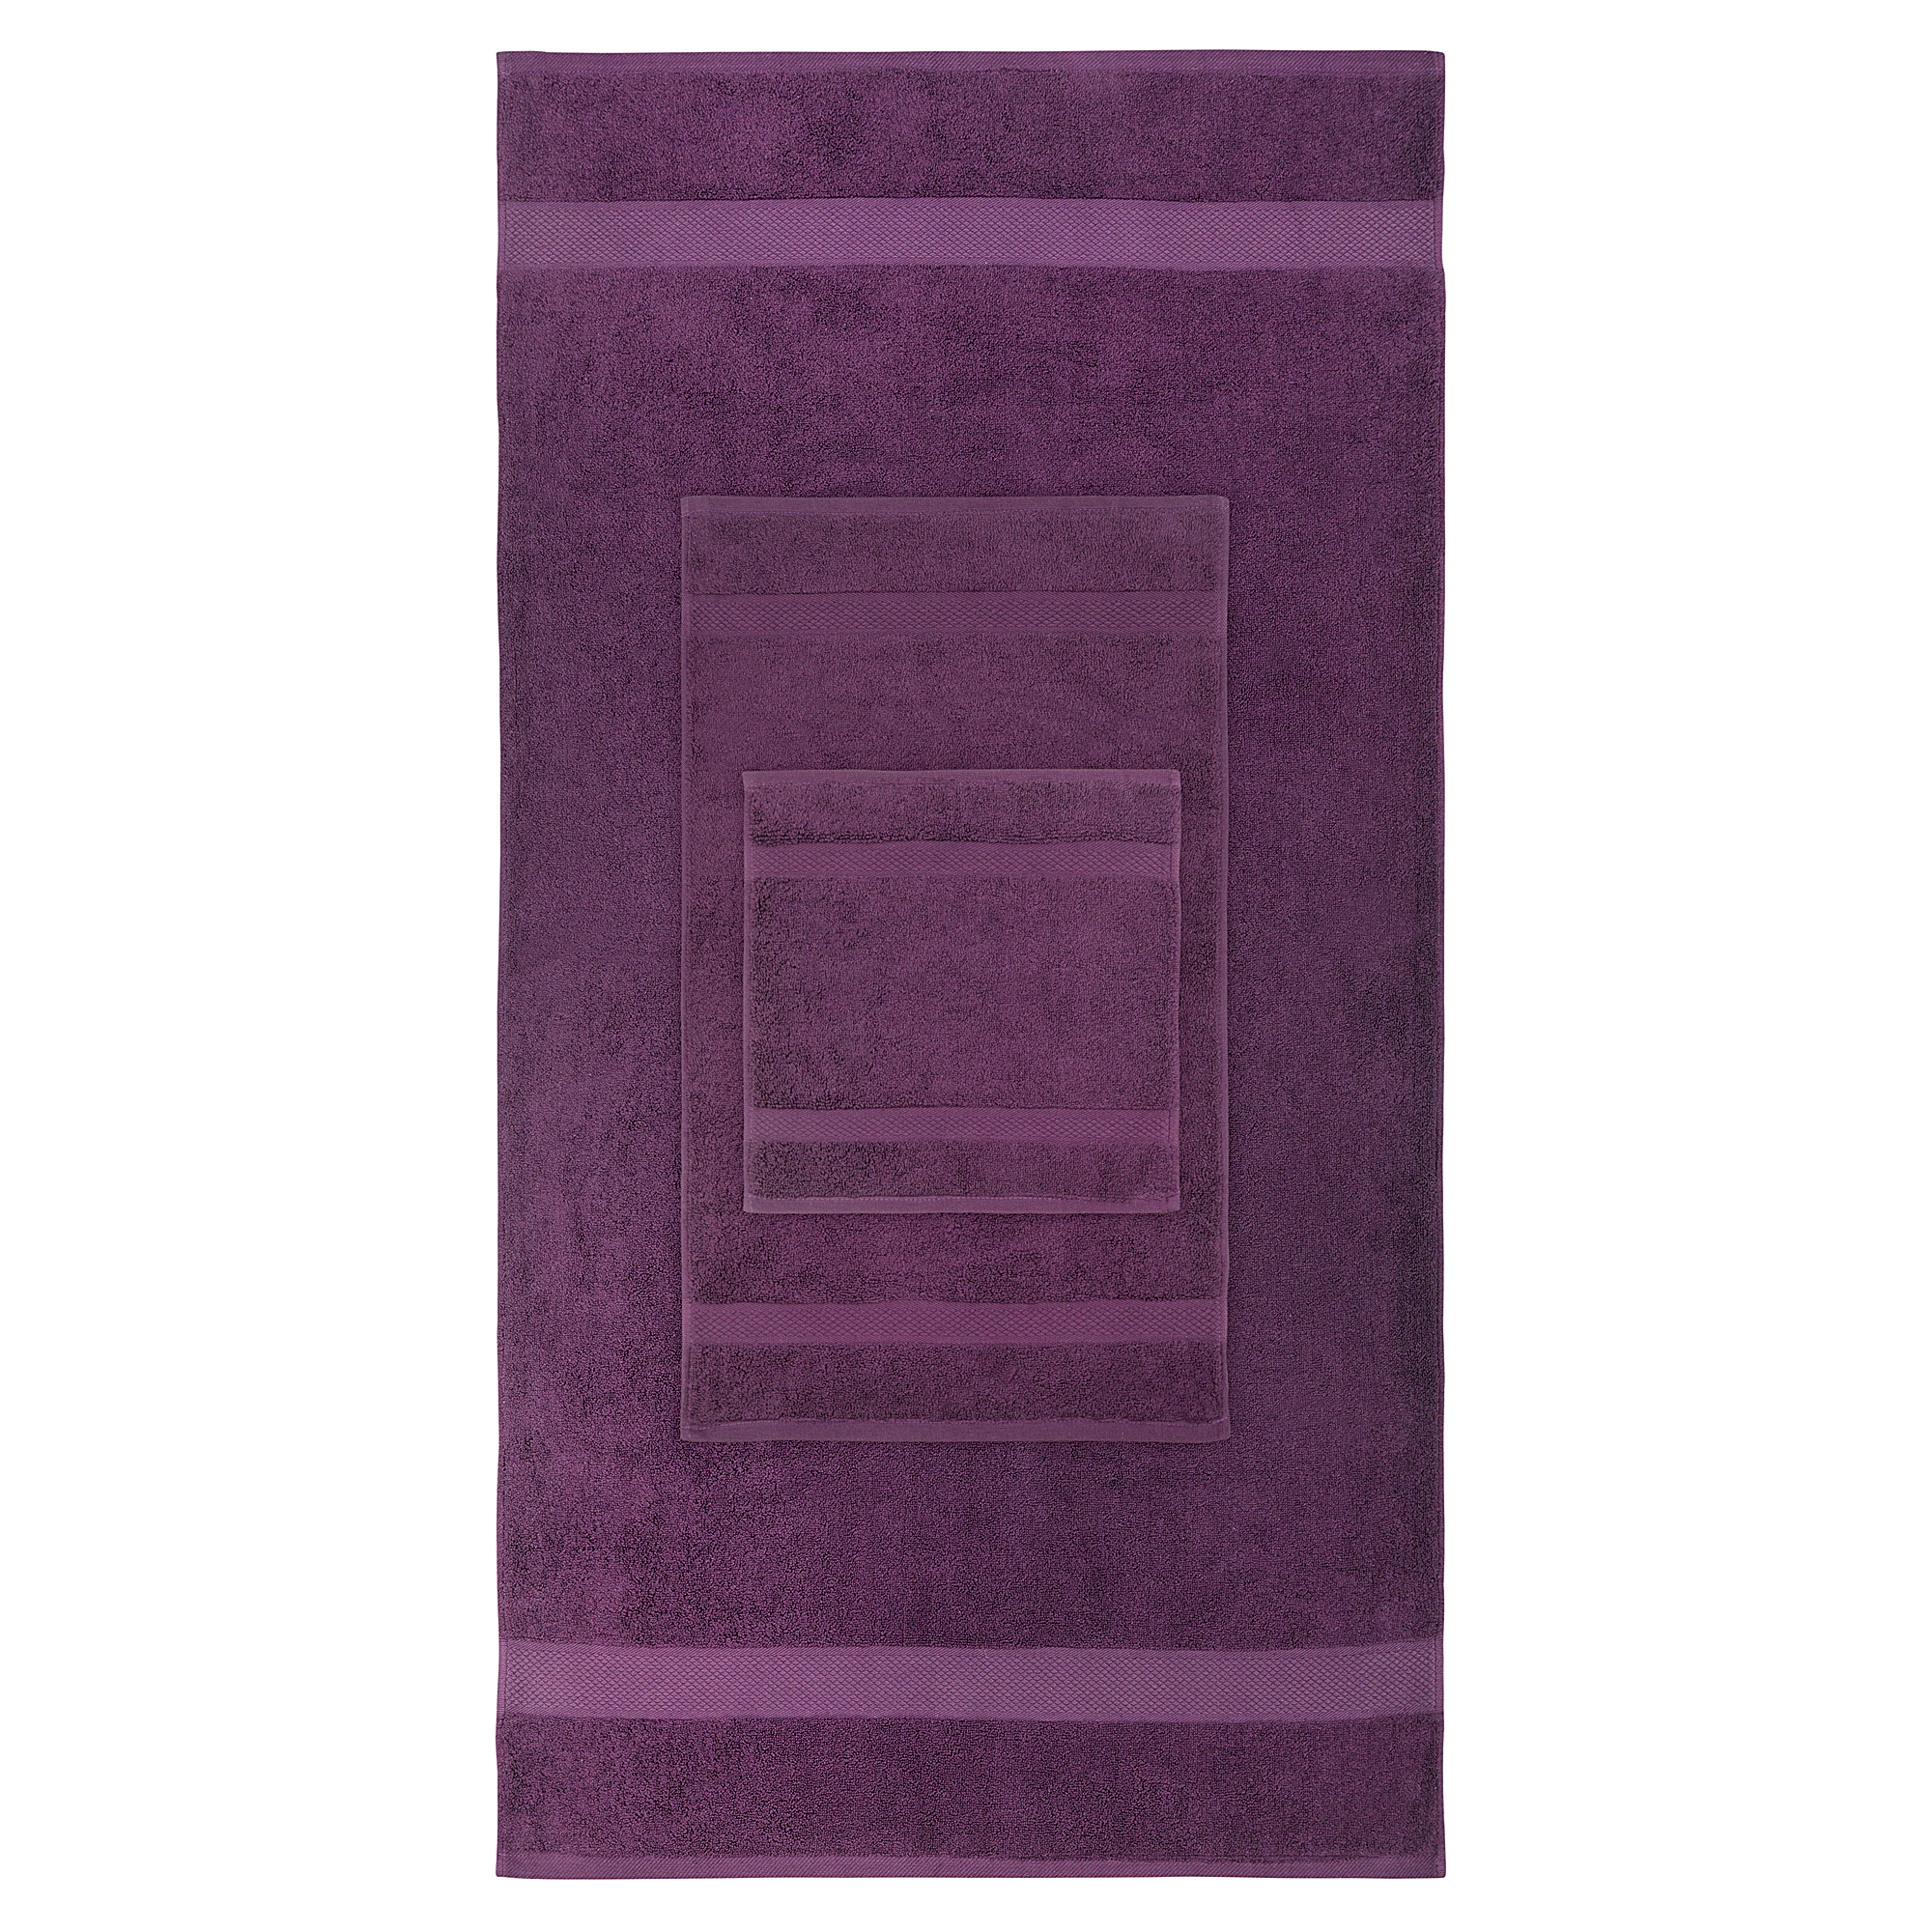 8pcs 700gsm Signature Range Purple Plain 8 Pieces Bale Set Towel